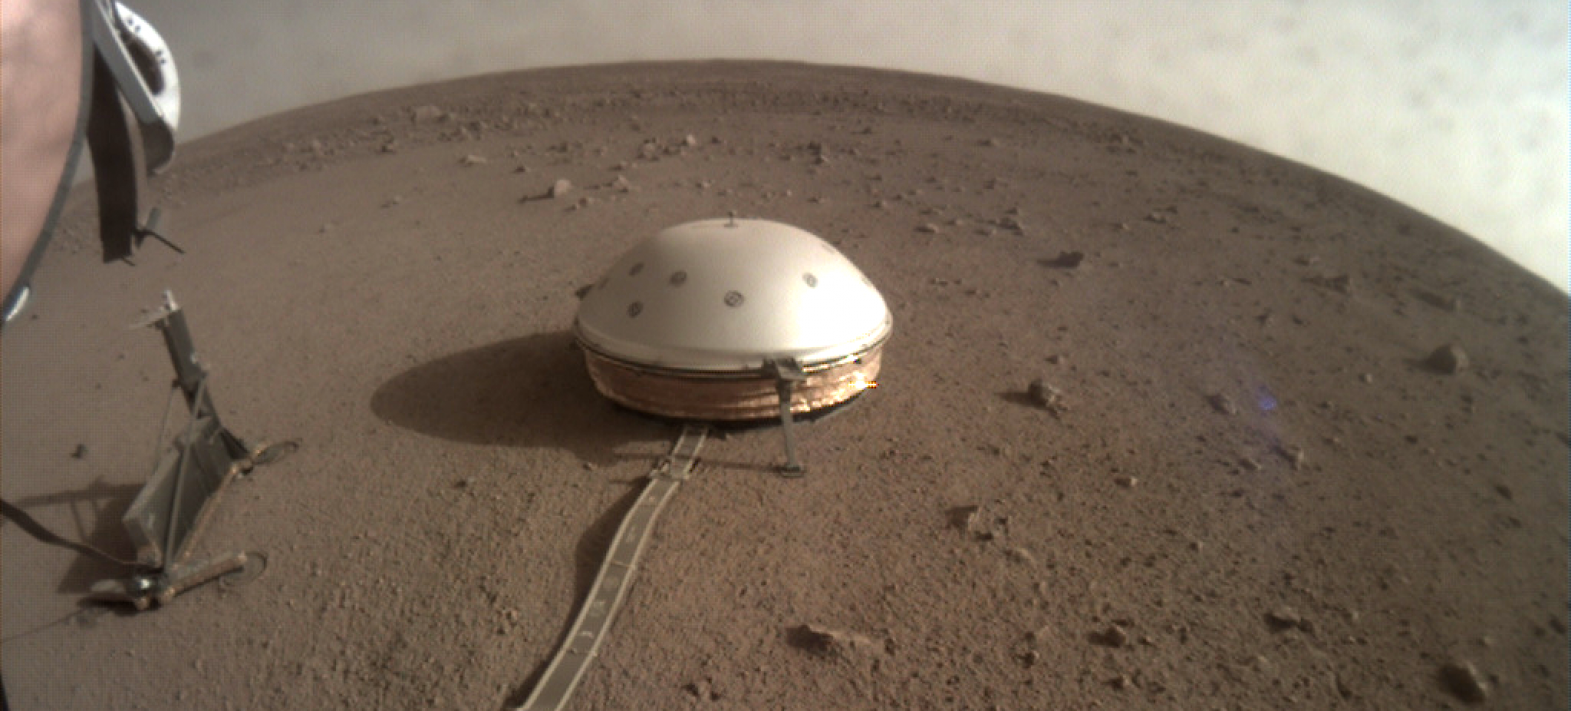 InSight picks up strange sounds on Mars